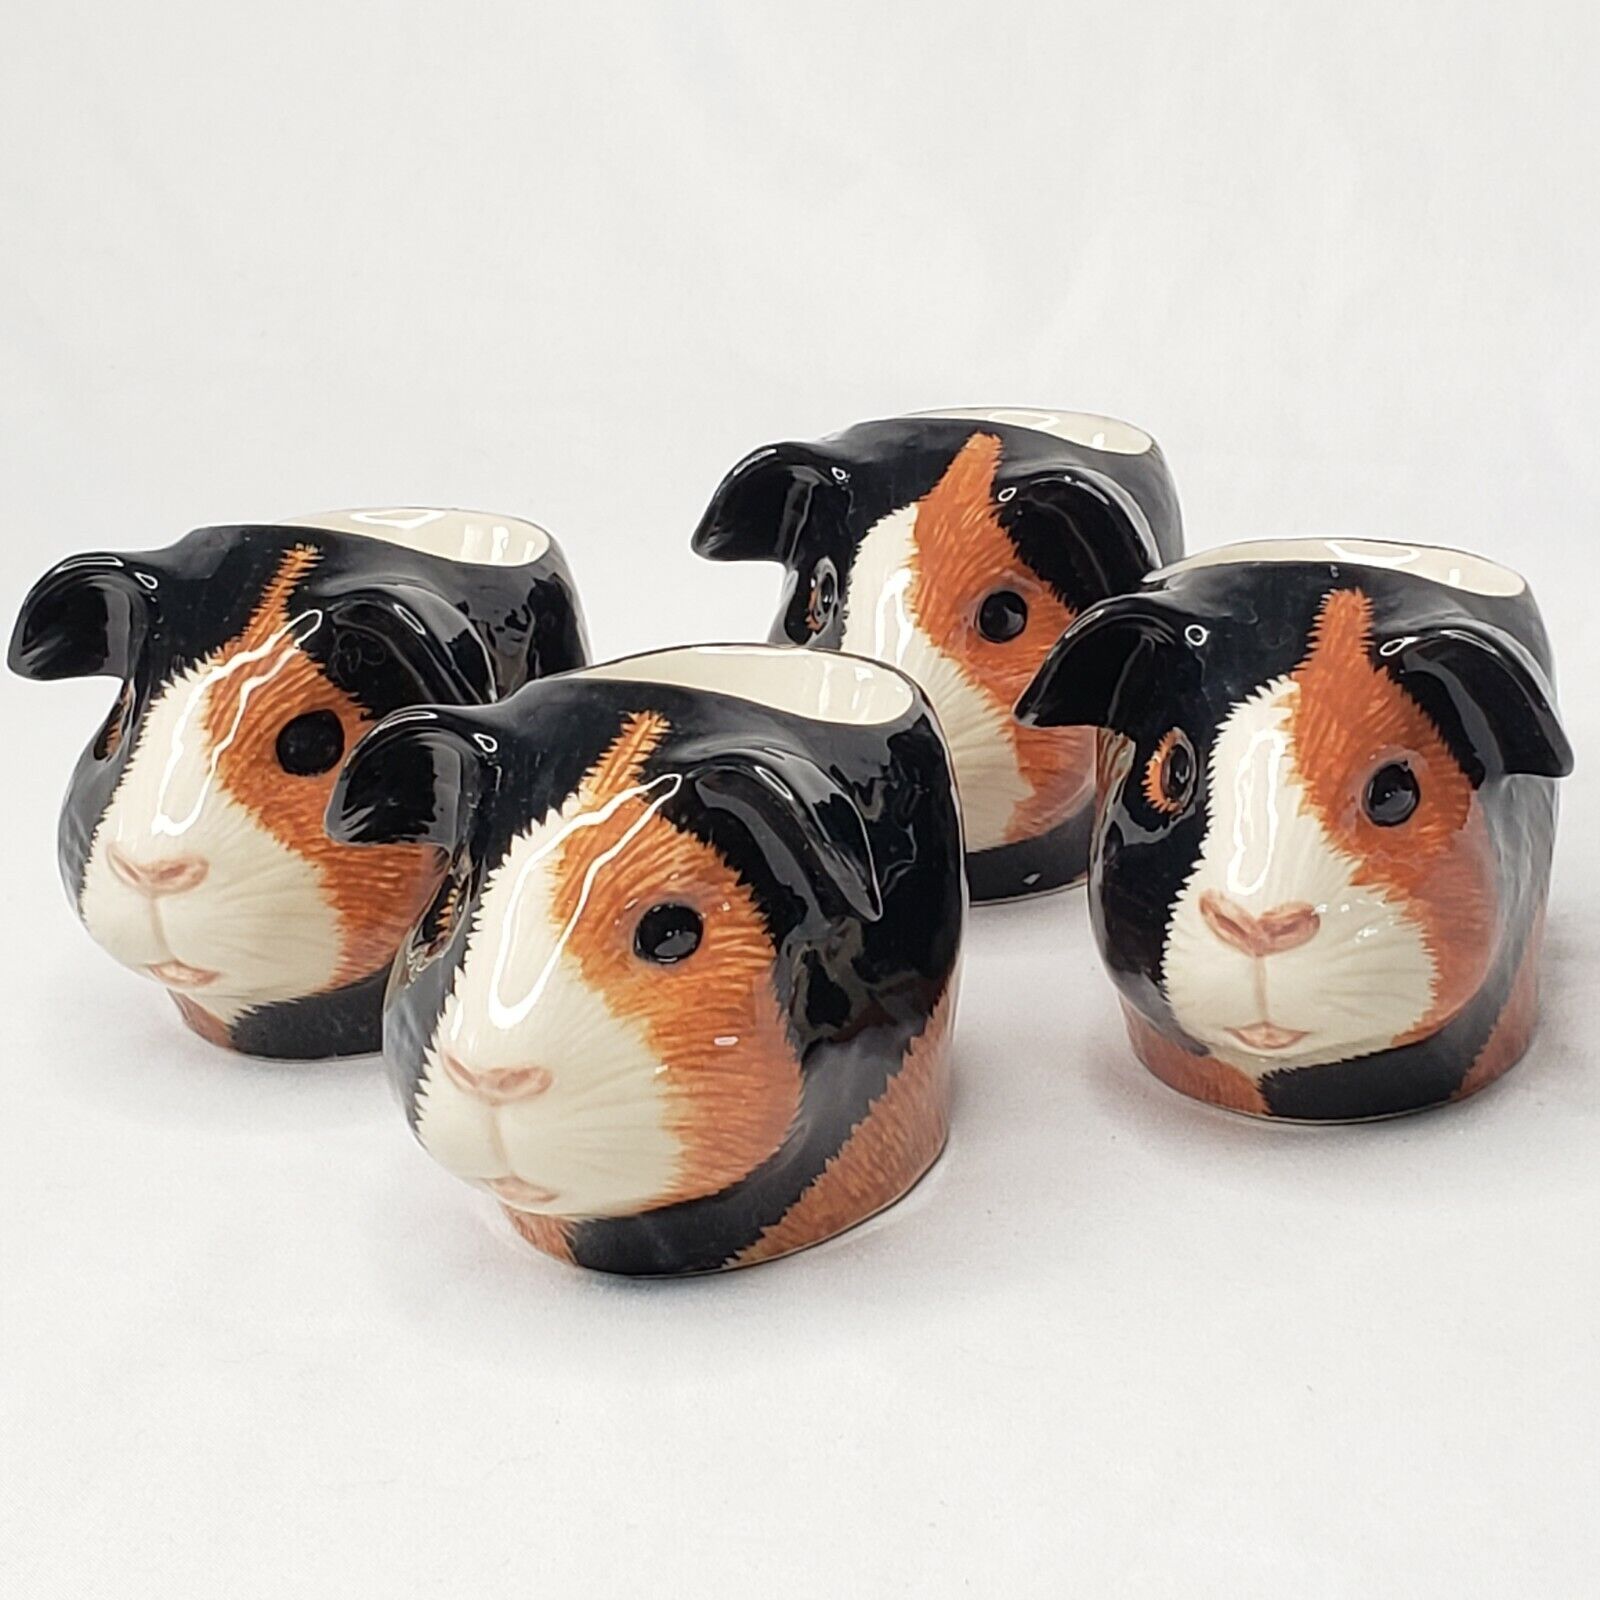 4 Quail Ceramics Guinea Pig Egg Cups ~ Hand Painted